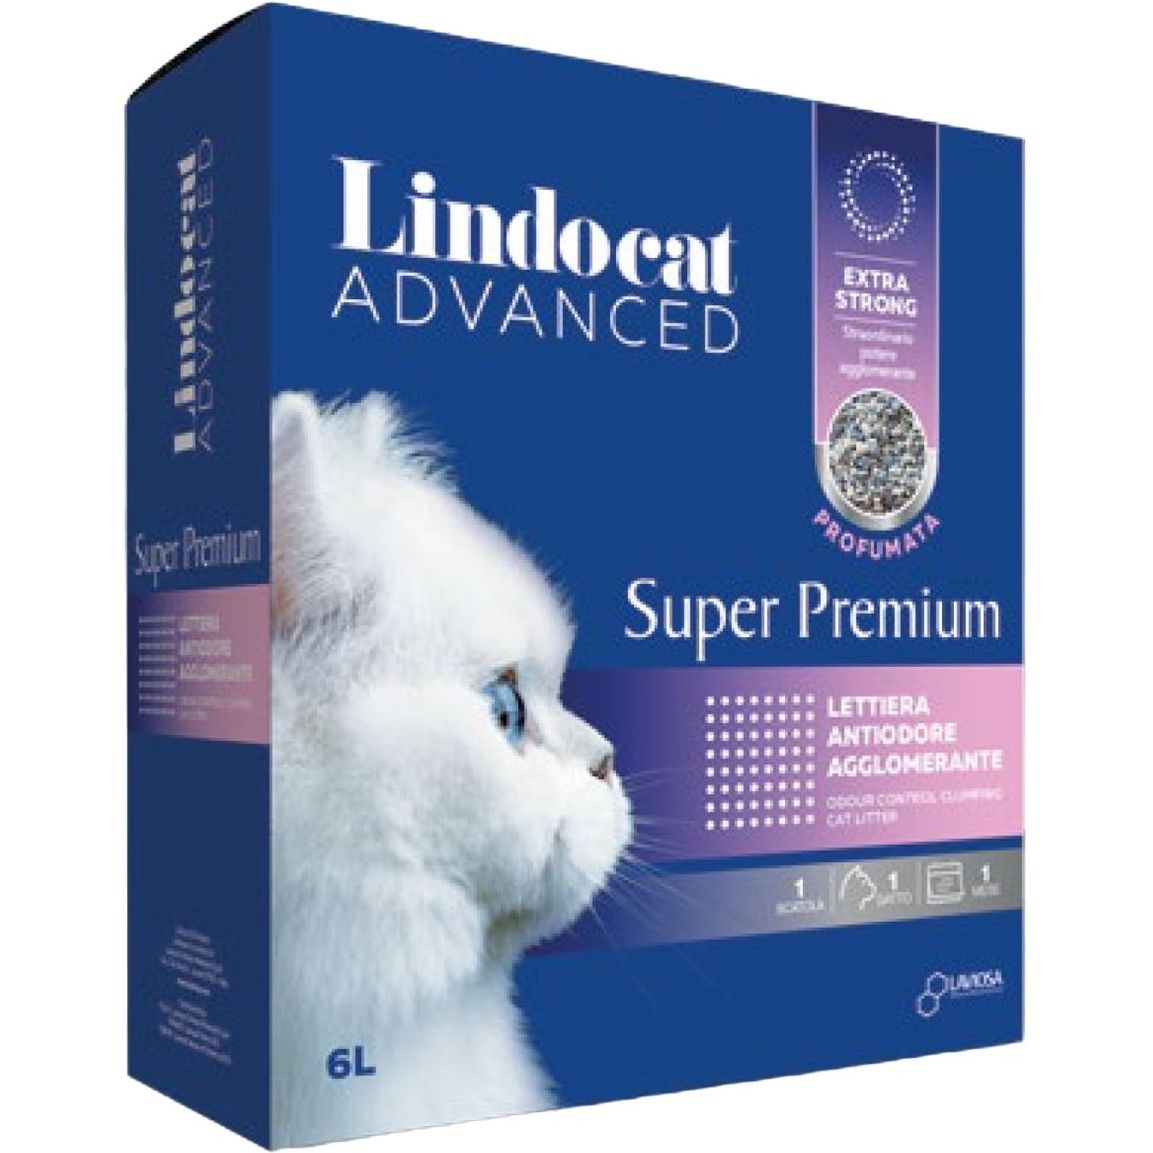 Наполнитель бентонитовый для кошачьего туалета Lindocat Super Premium Unscented, 6 л - фото 1